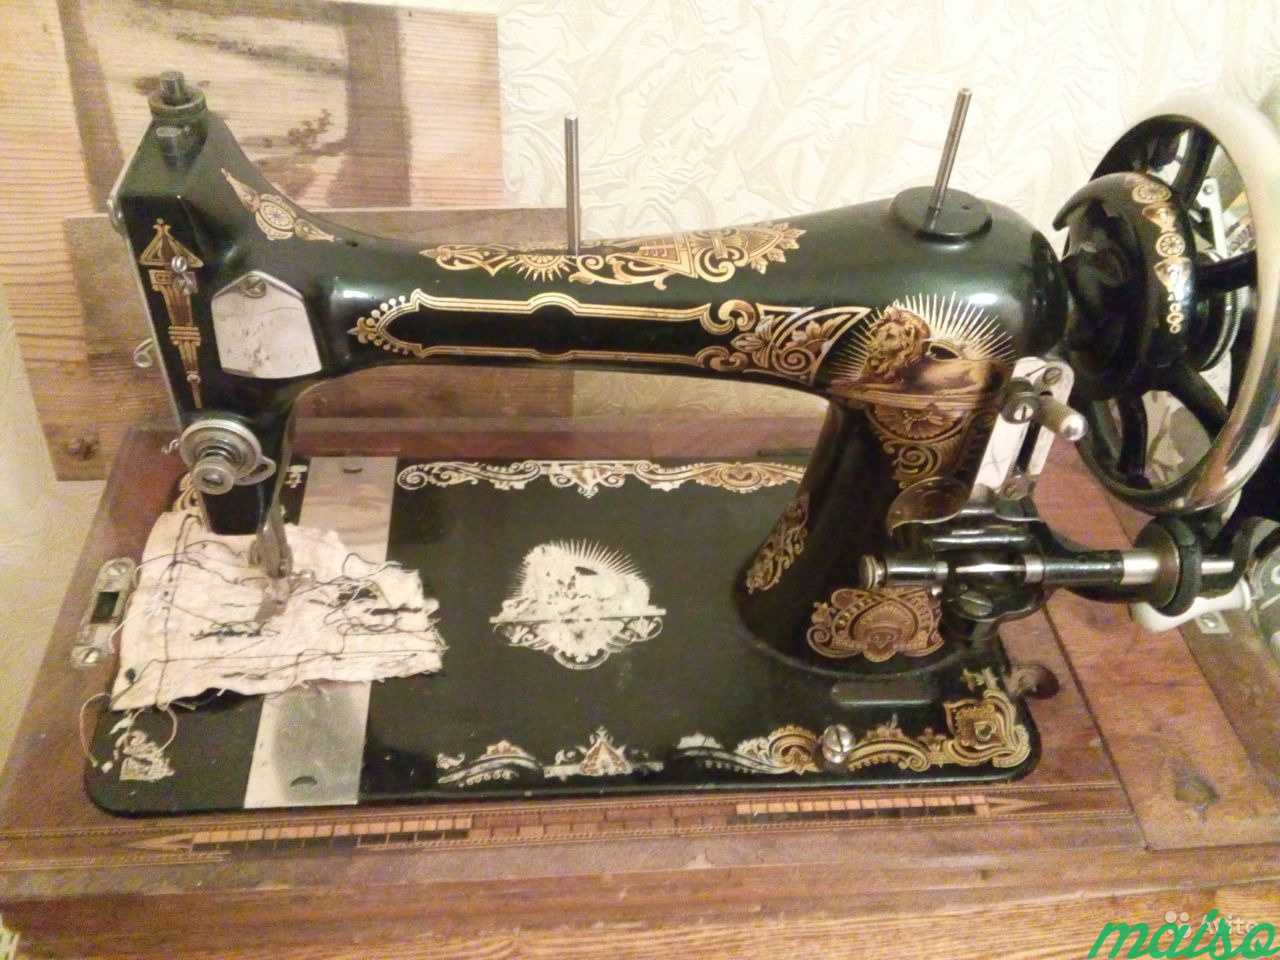 Швейная машинка в Москве. Фото 1